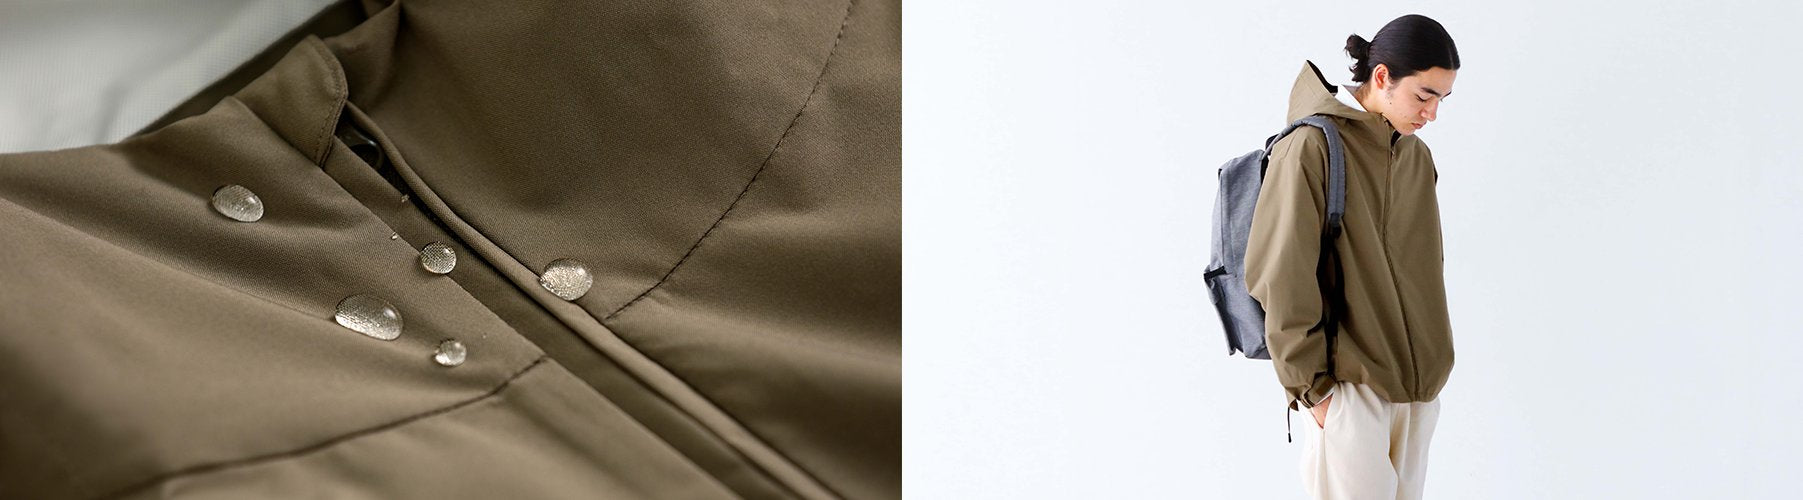 Men's Outerwear: Men's Water Repellent Stand Fall Collar Coat $129.90, Men's Water Repellent Hooded Jacket $59.90